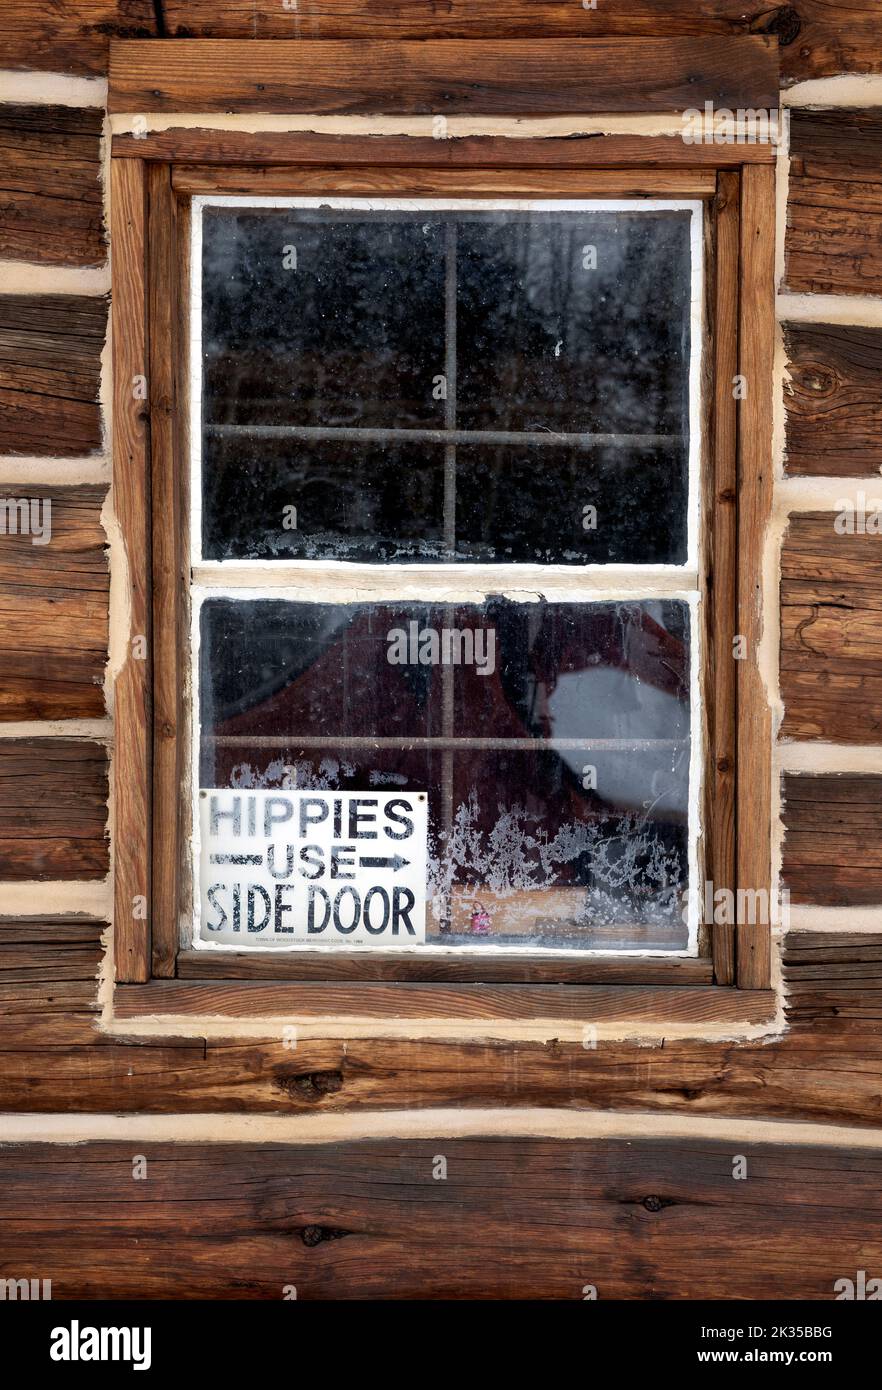 WY05060-00..... WYOMING - Accedi alla finestra di una cabina presso il centro ippico del Grand Teton National Park. I hippies usano la porta laterale. Foto Stock